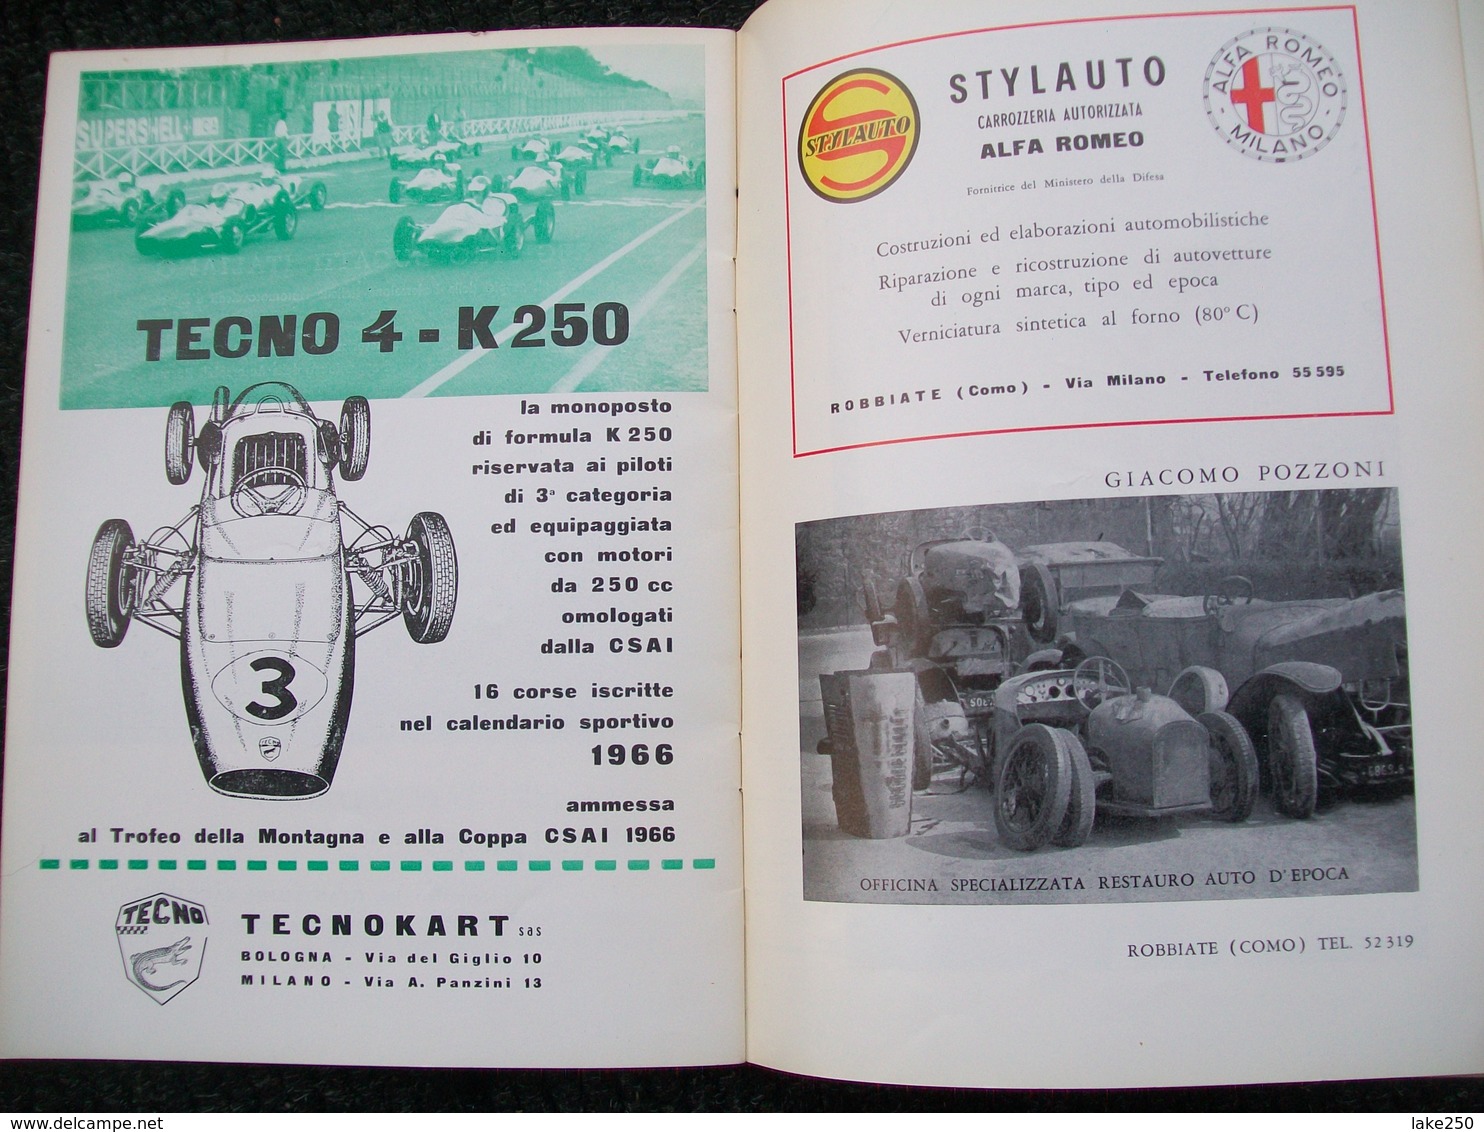 VIII COPPA MONZA Autodromo Nazionale Di Monza 1966 - Motori